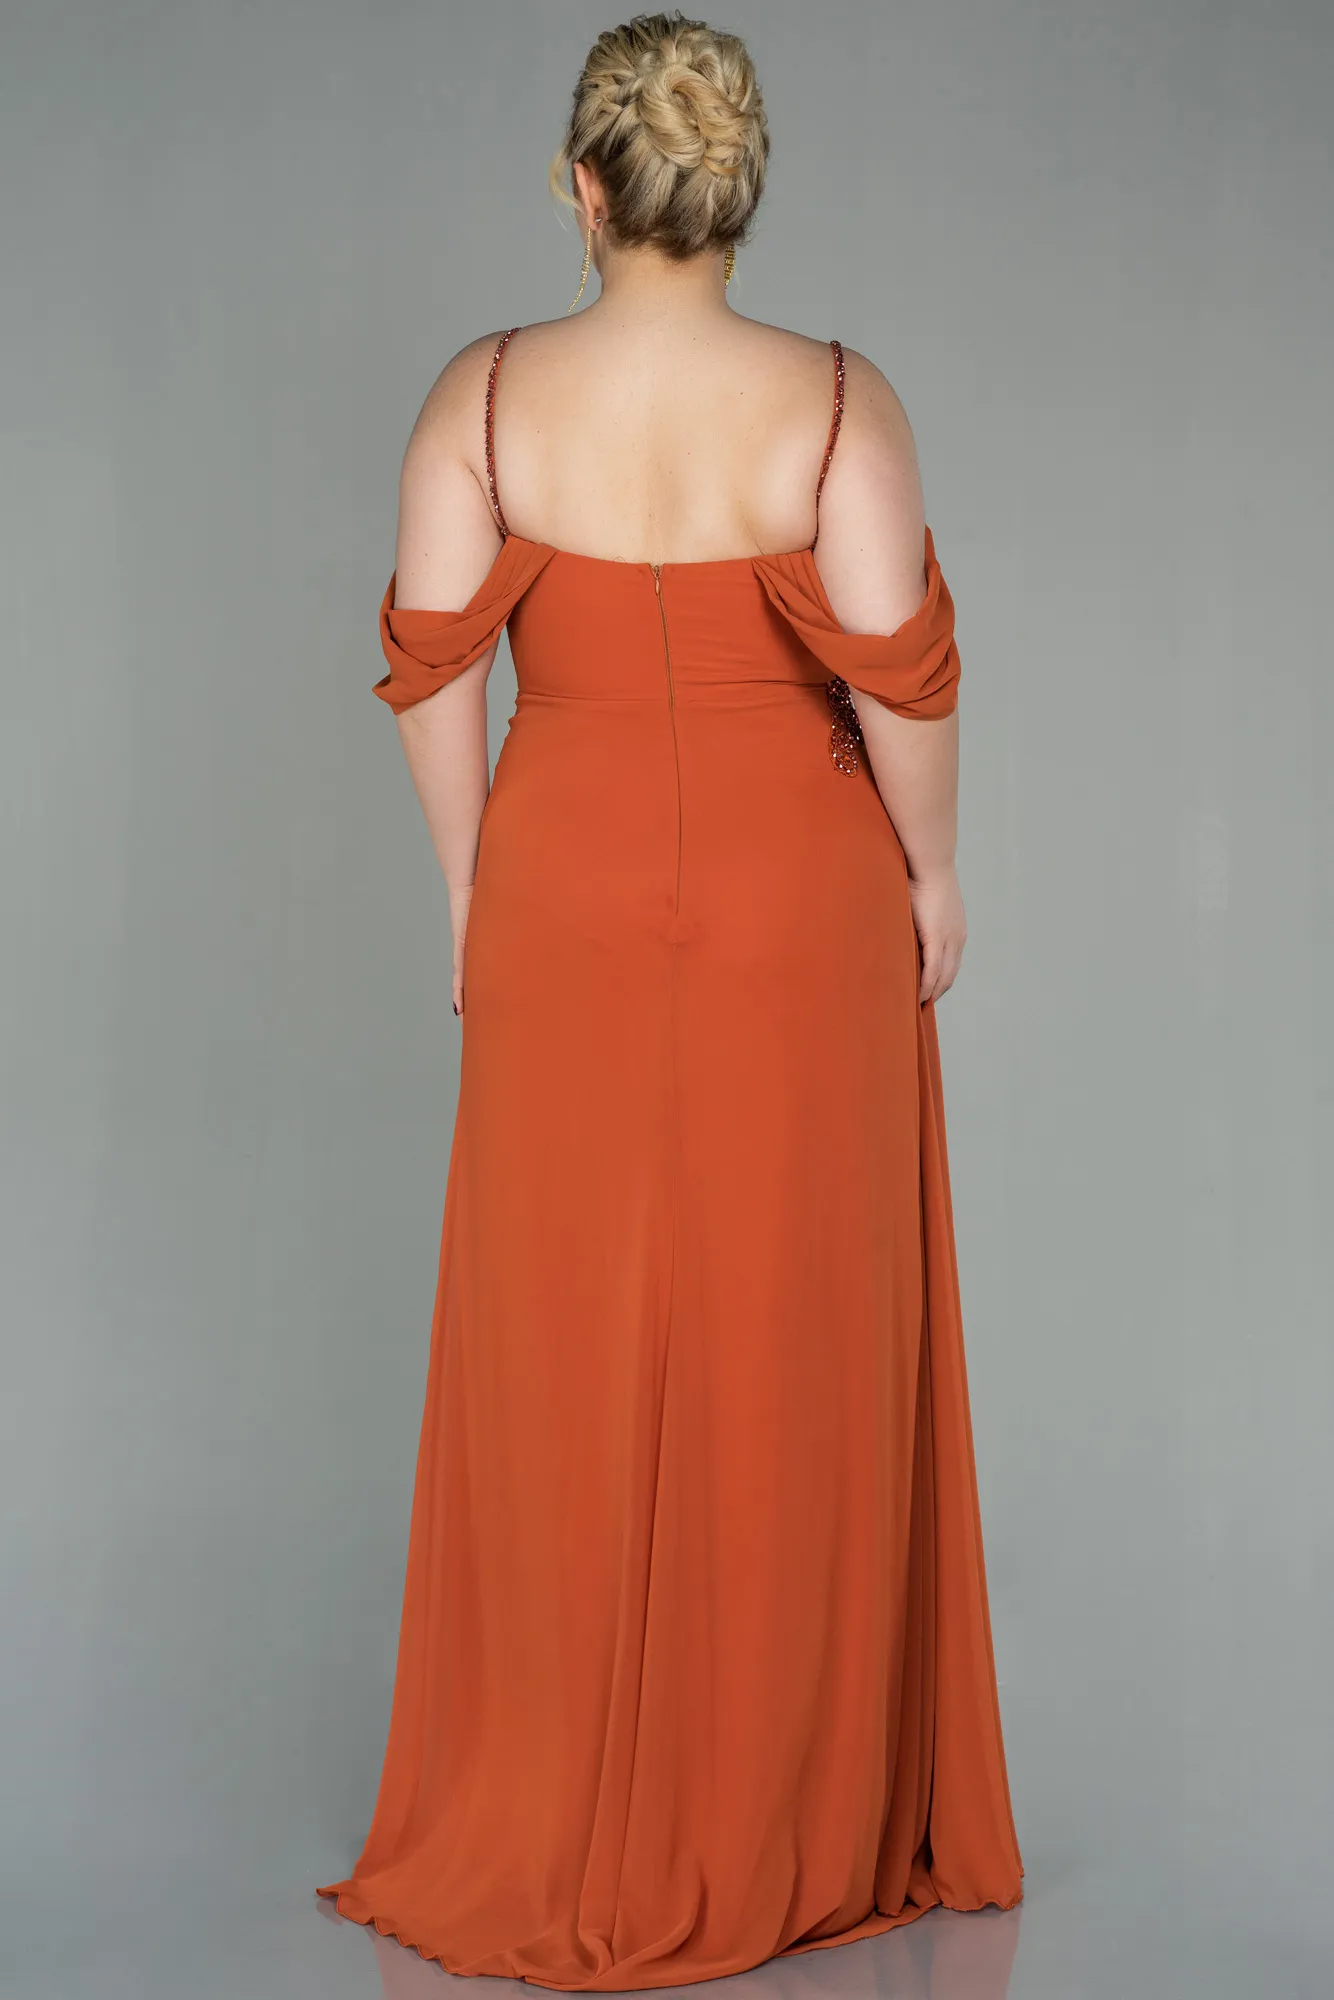 Cinnamon-Long Chiffon Plus Size Evening Dress ABU2929